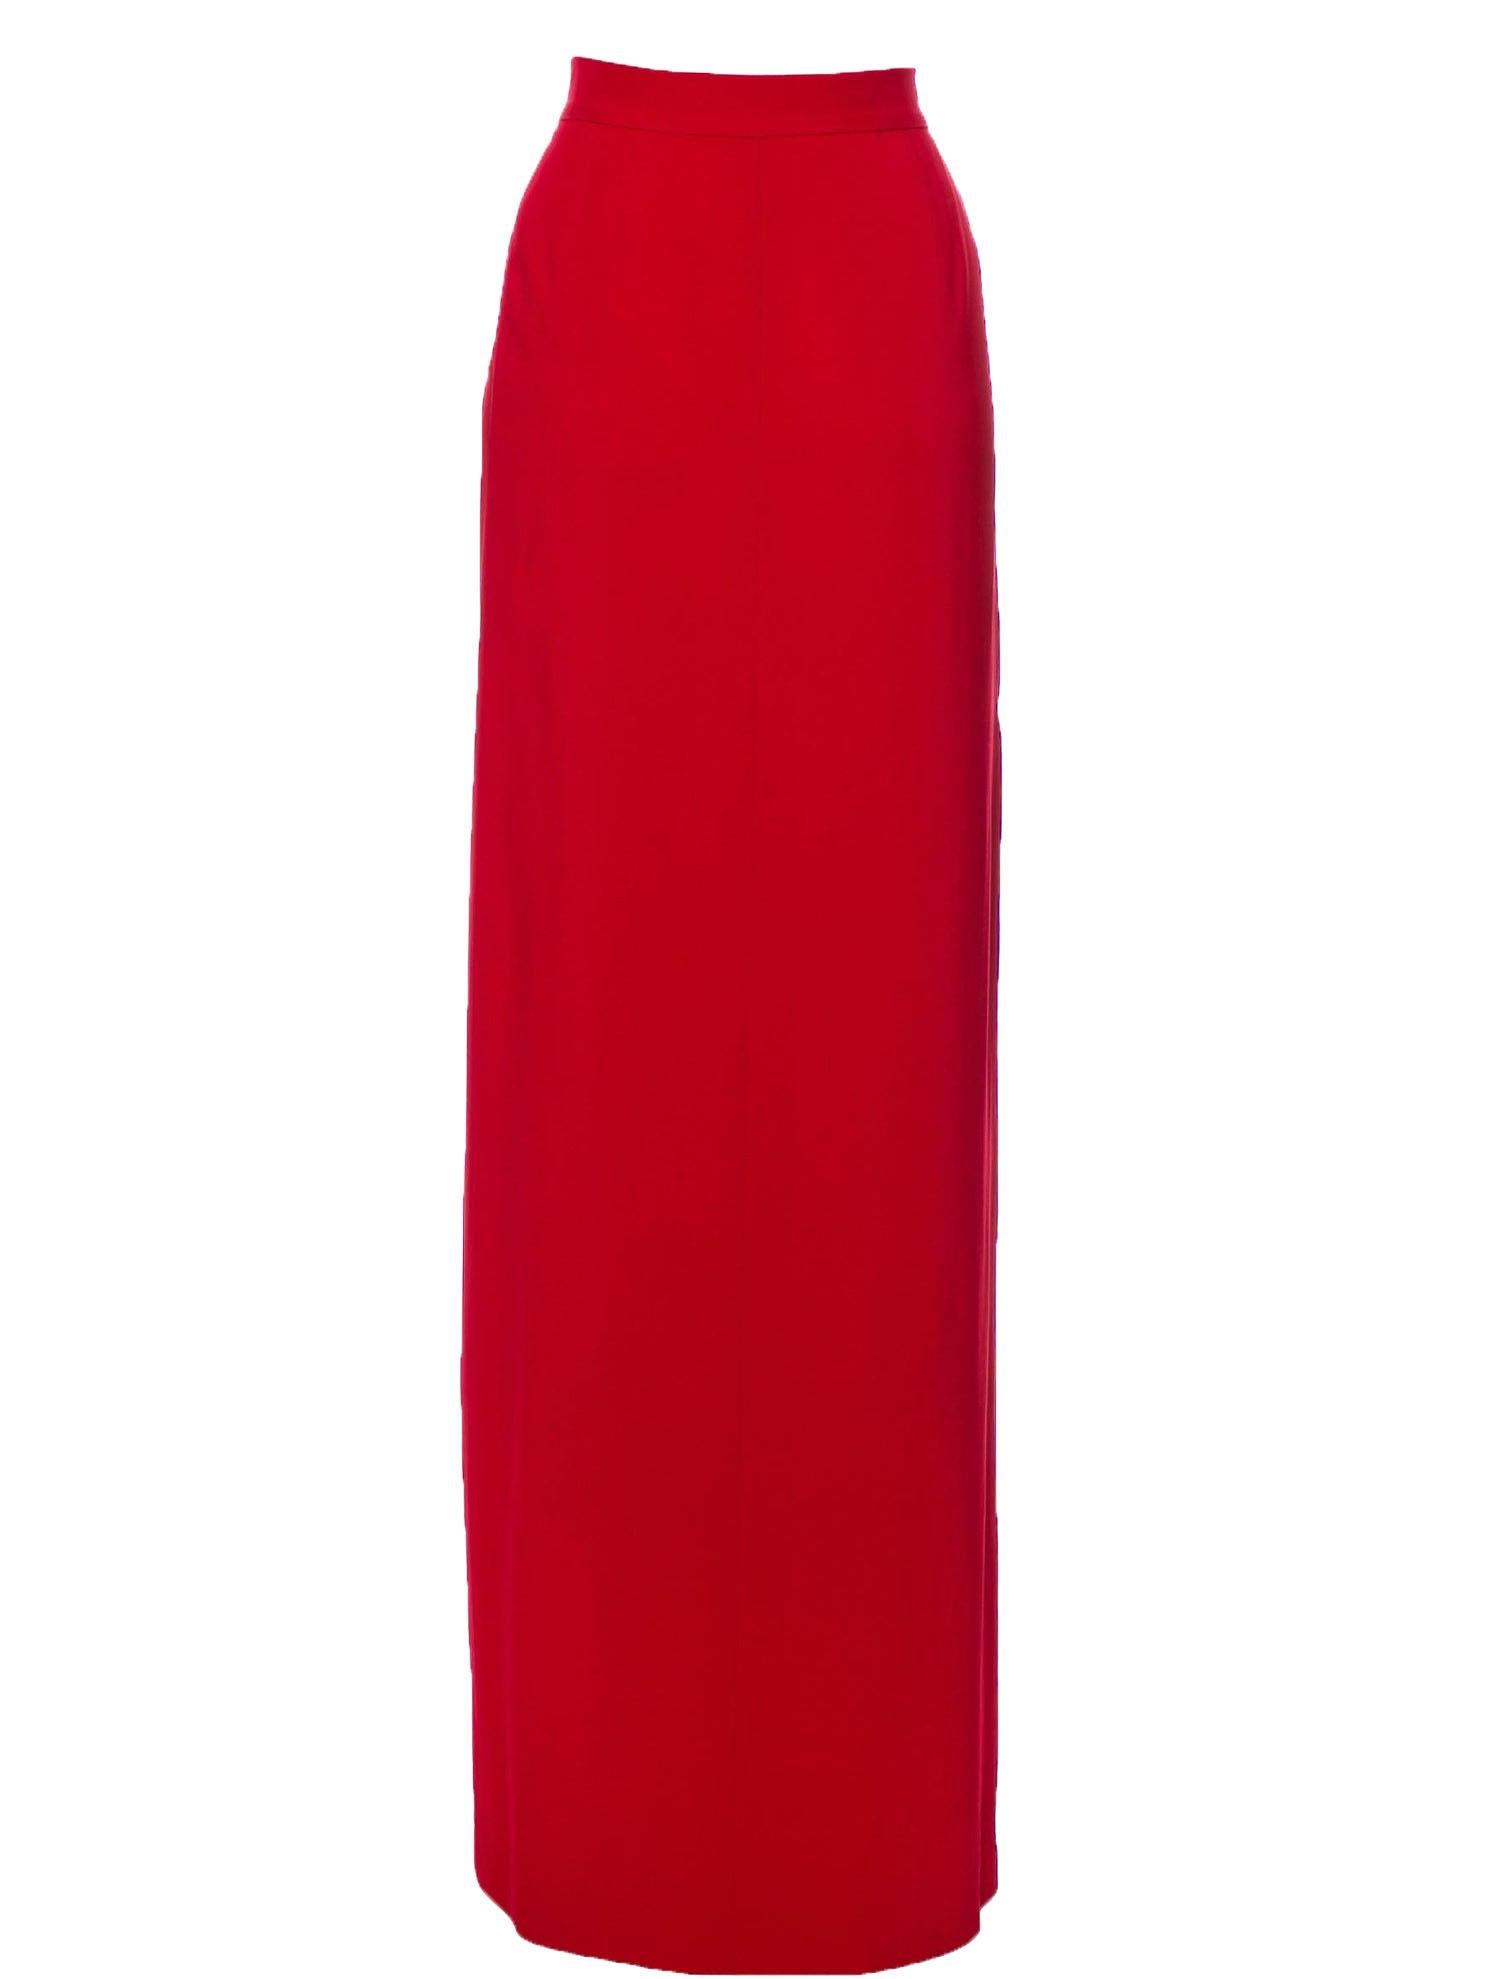 Nouveau Valentino Roma Maxi Jupe Rouge
Taille italienne 48 - US 12
Noeud et volants, plissé, entièrement doublé, stretch, 97% viscose, 3% élasthanne.
Mesures : longueur - 47 pouces, taille - 34 pouces, hanches - 43/44 pouces - le tissu est